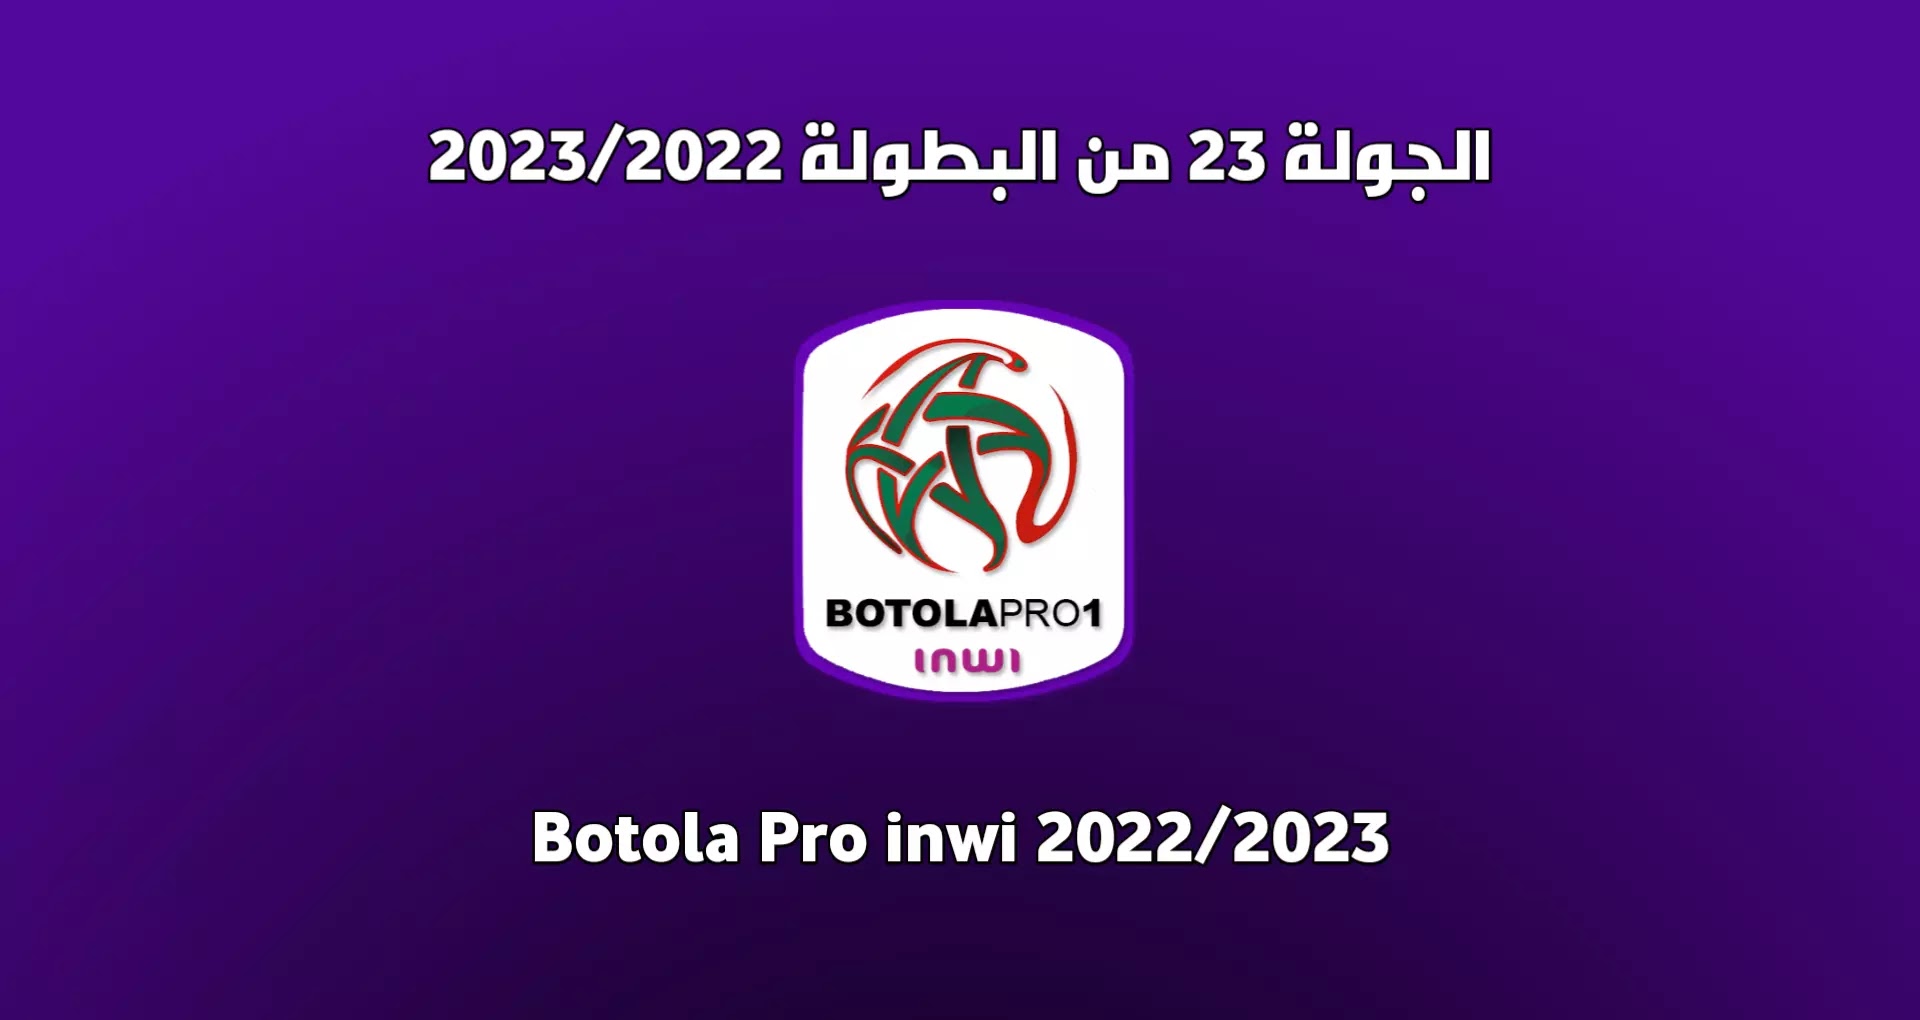 برنامج الجولة 23 من البطولة المغربية 2023/2022